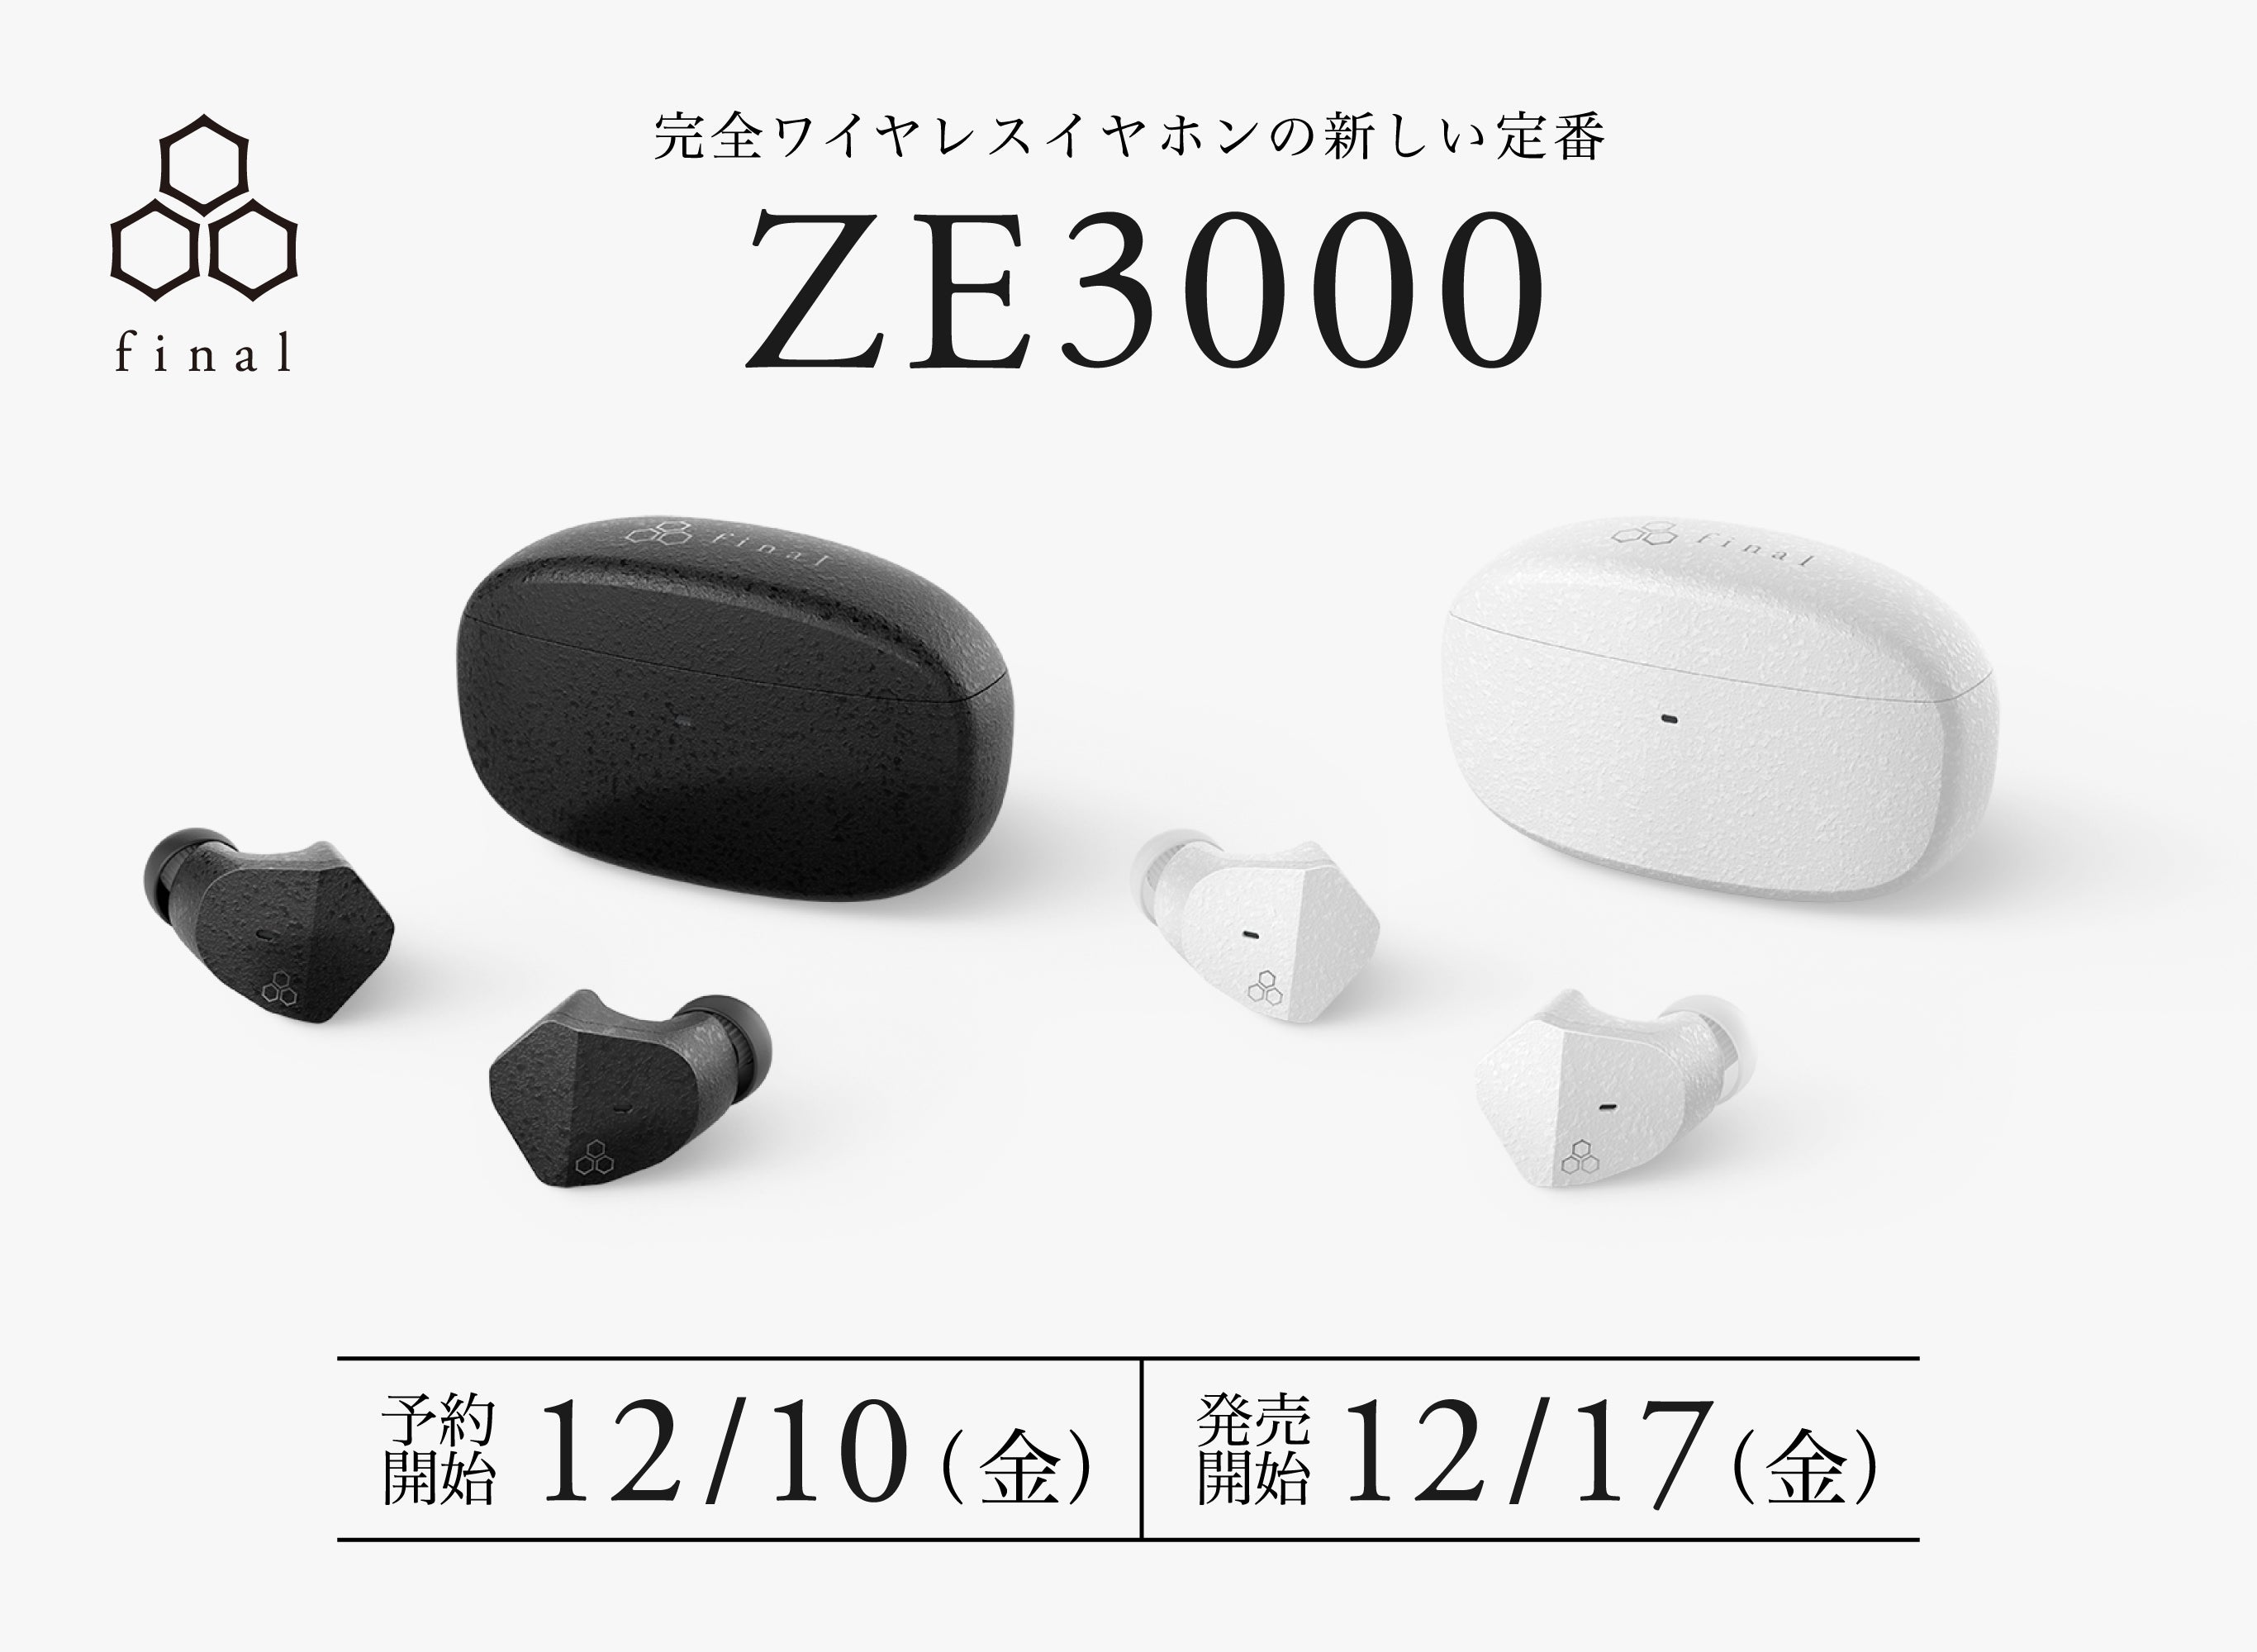 新しい定番と言える完全ワイヤレスイヤホン「ZE3000」遂に発売決定